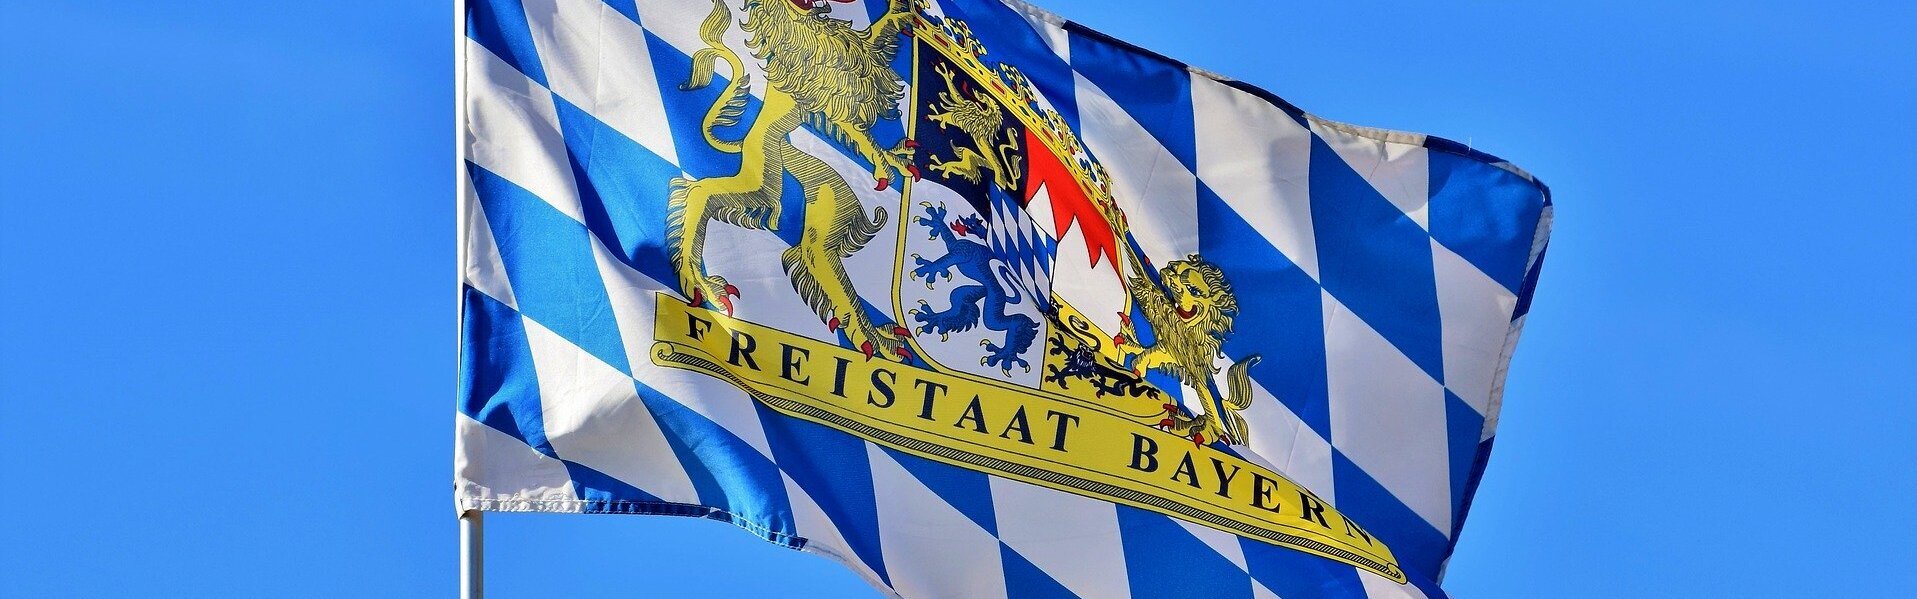 Das Bild zeuigt eine Bayernflagge.